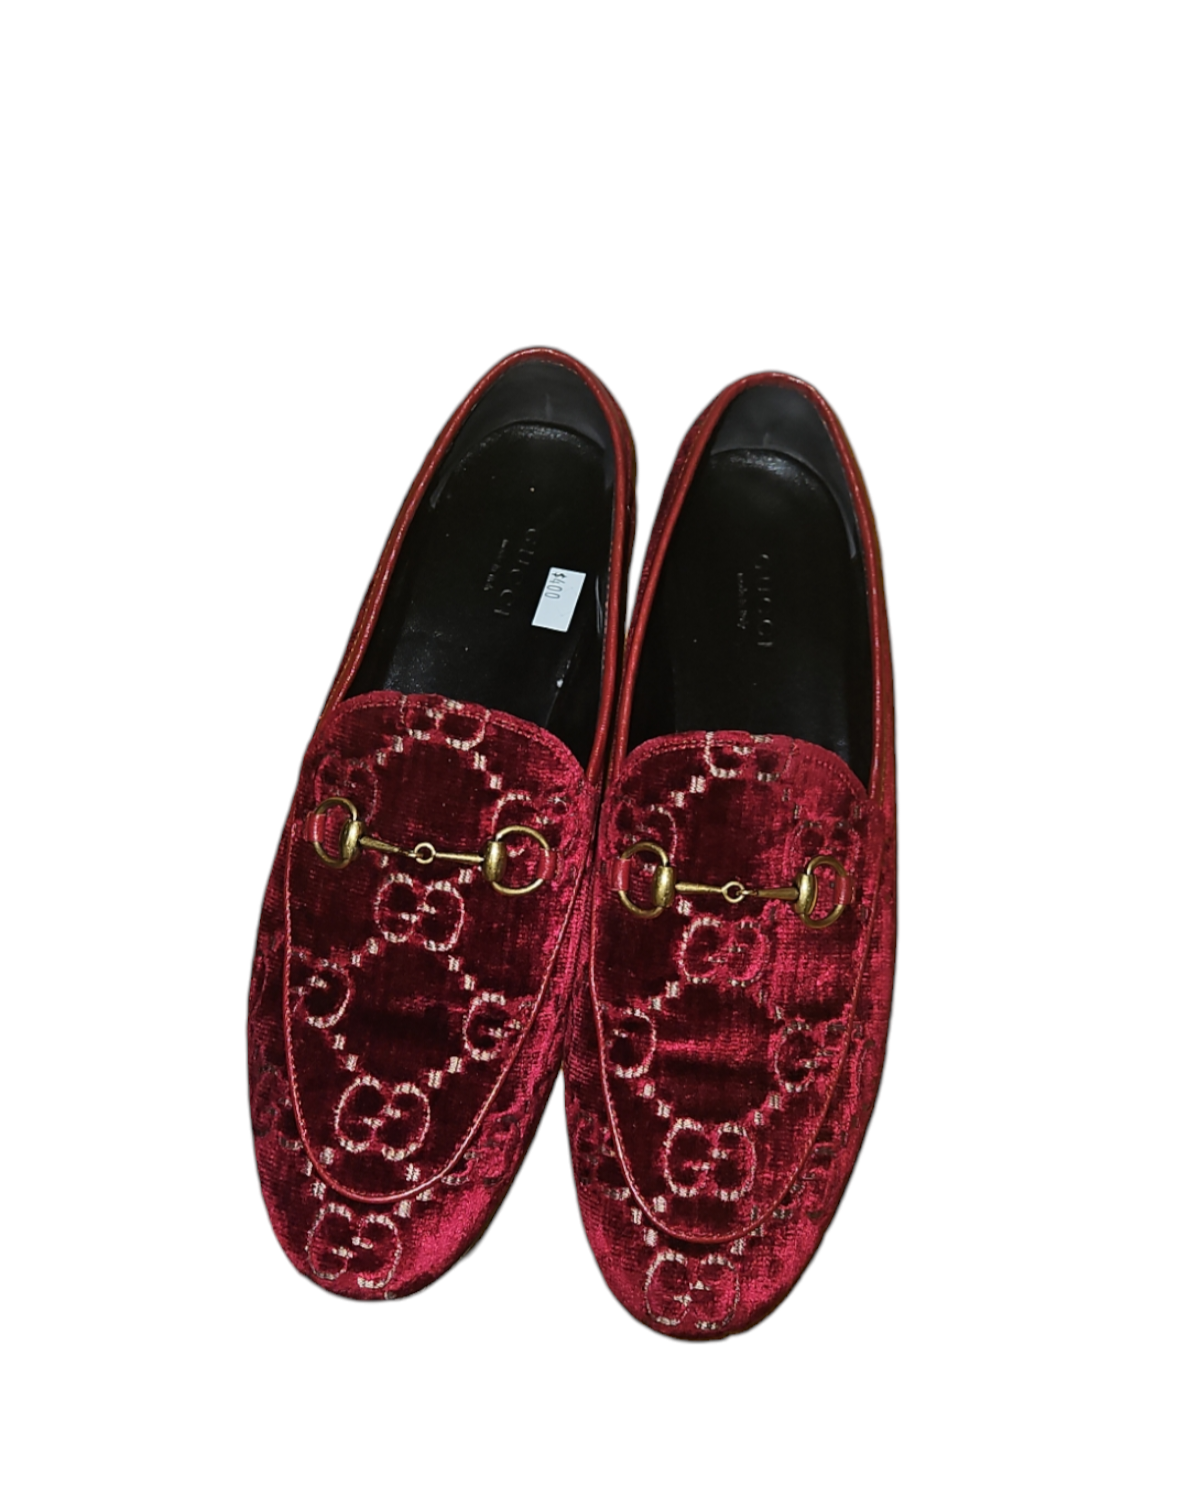 Gucci Monogram Loafers in Velvet Burgundy